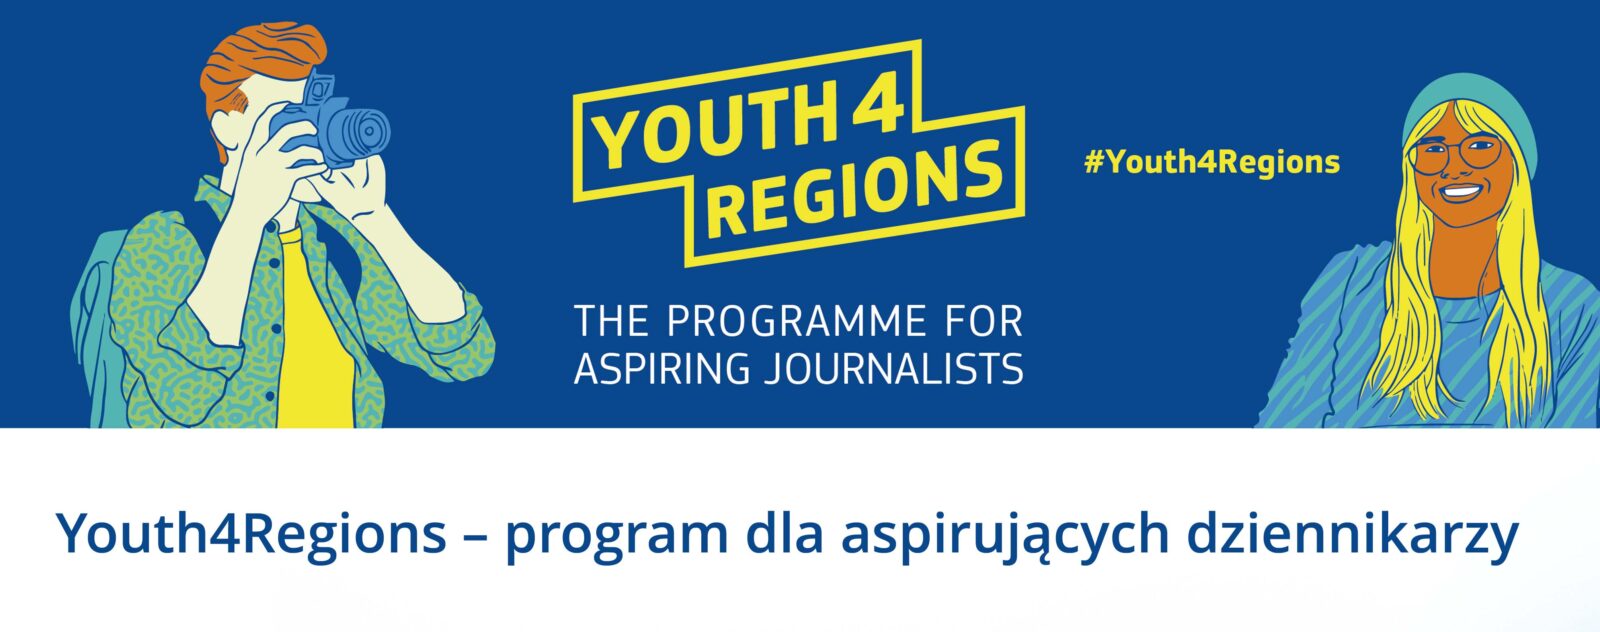 Youth4Regions – program dla aspirujących dziennikarzy. Na grafice widać młodego mężczyznę z aparatem fotograficznym oraz młodą uśmiechniętą dziewczynę.